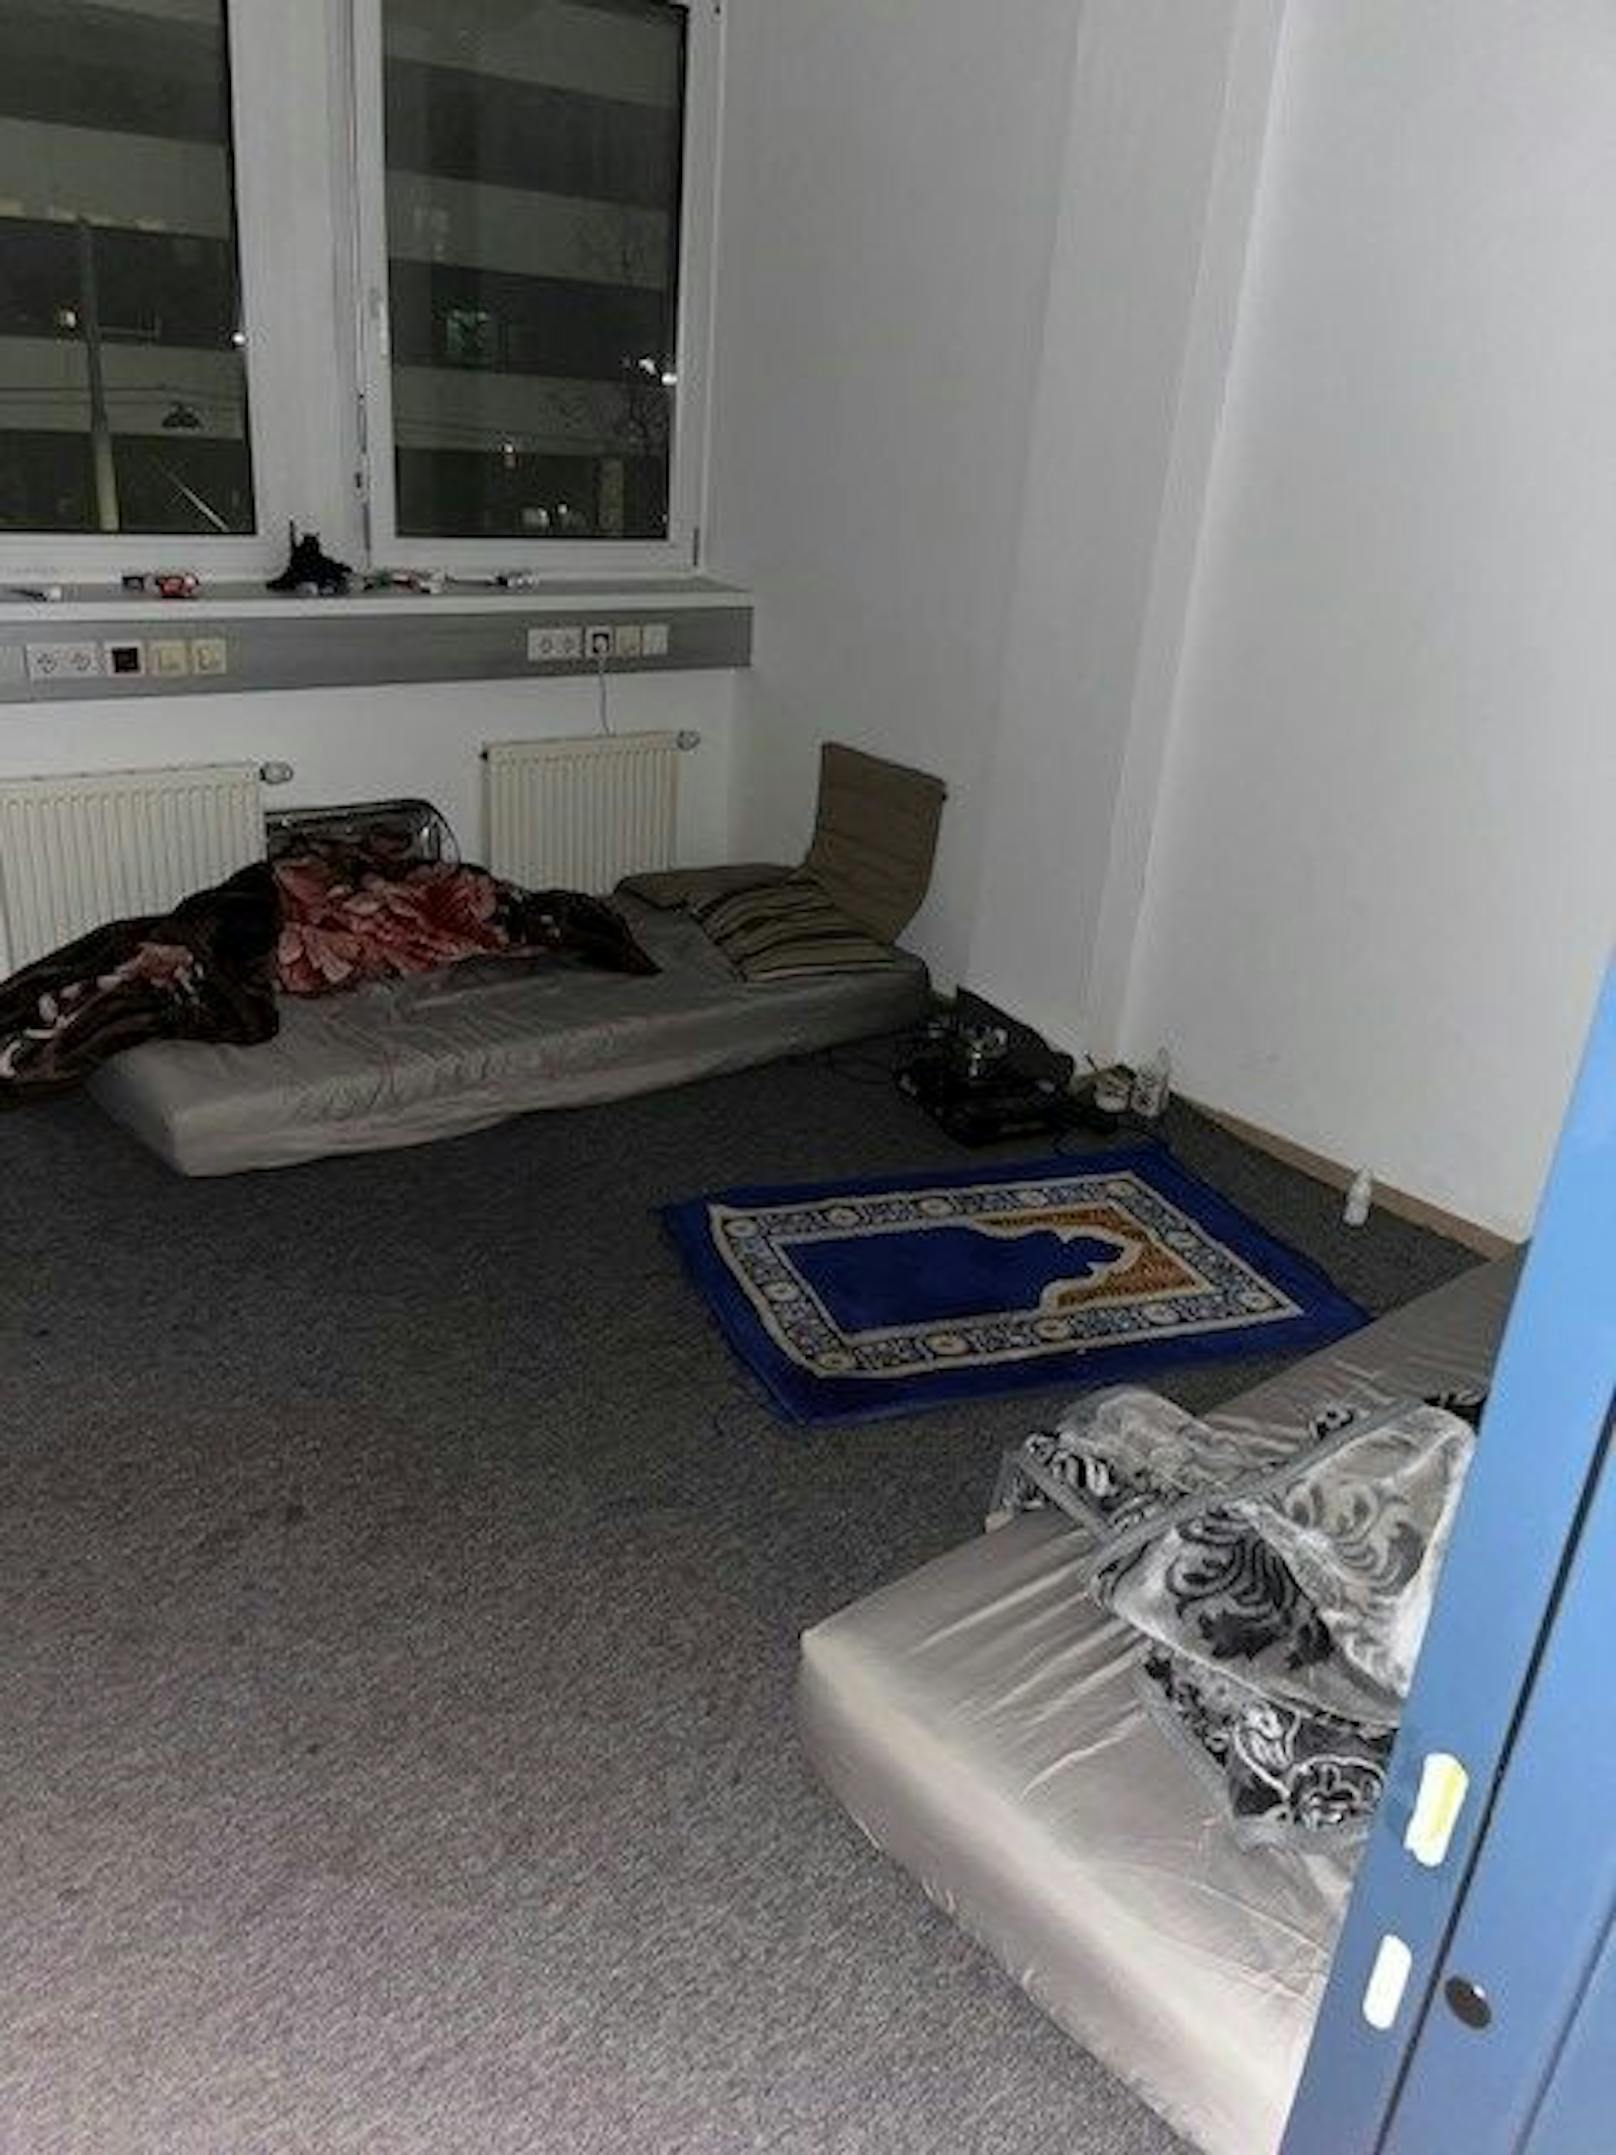 Die Gruppe Sofortmaßnahmen entdeckte bei einer Kontrolle in Wien-Brigittenau illegale Wohnnungen in einem Bürogebäude.